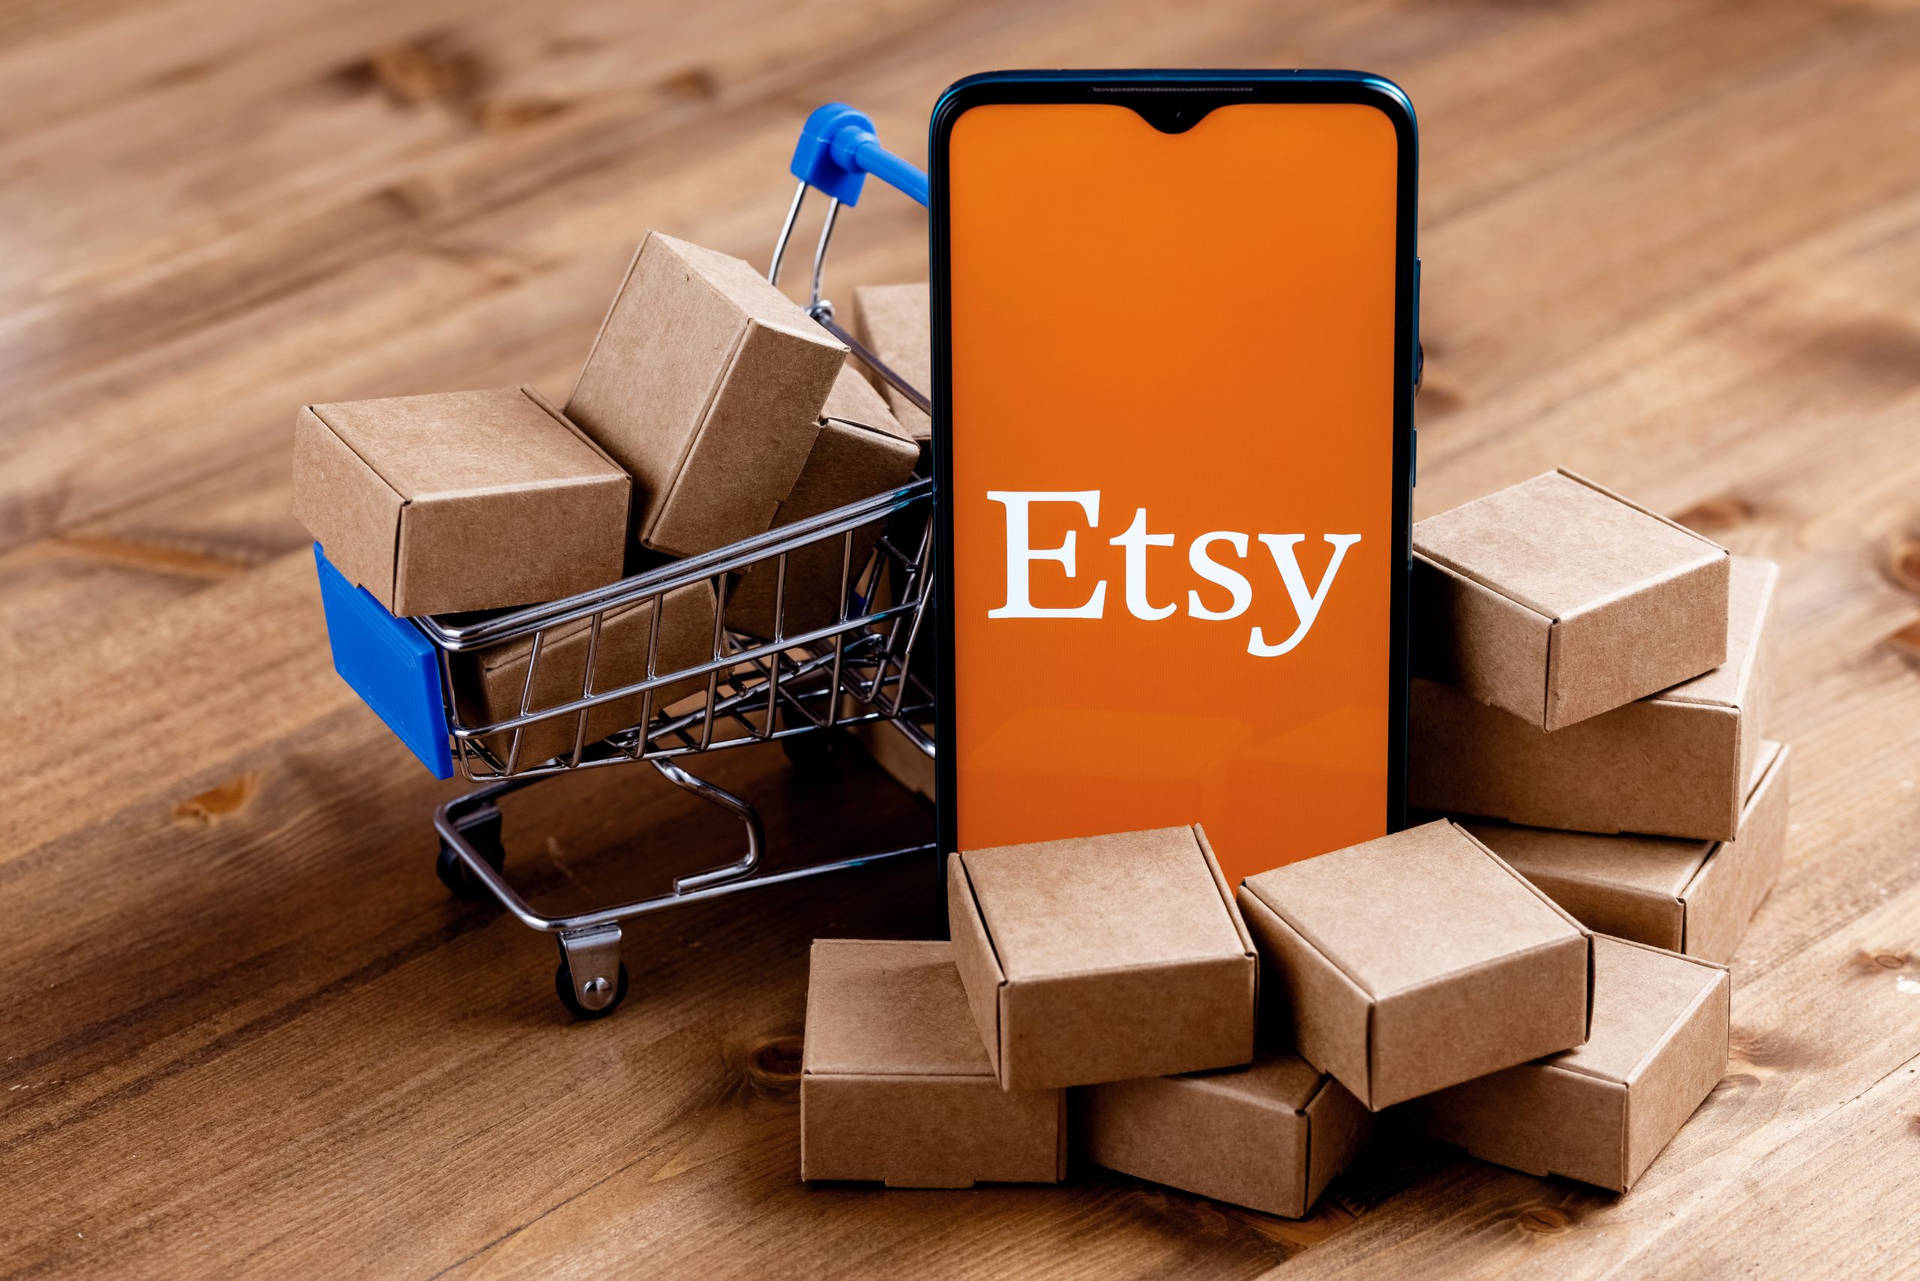 Etsy Mobile App Shopping Cart Wallpaper